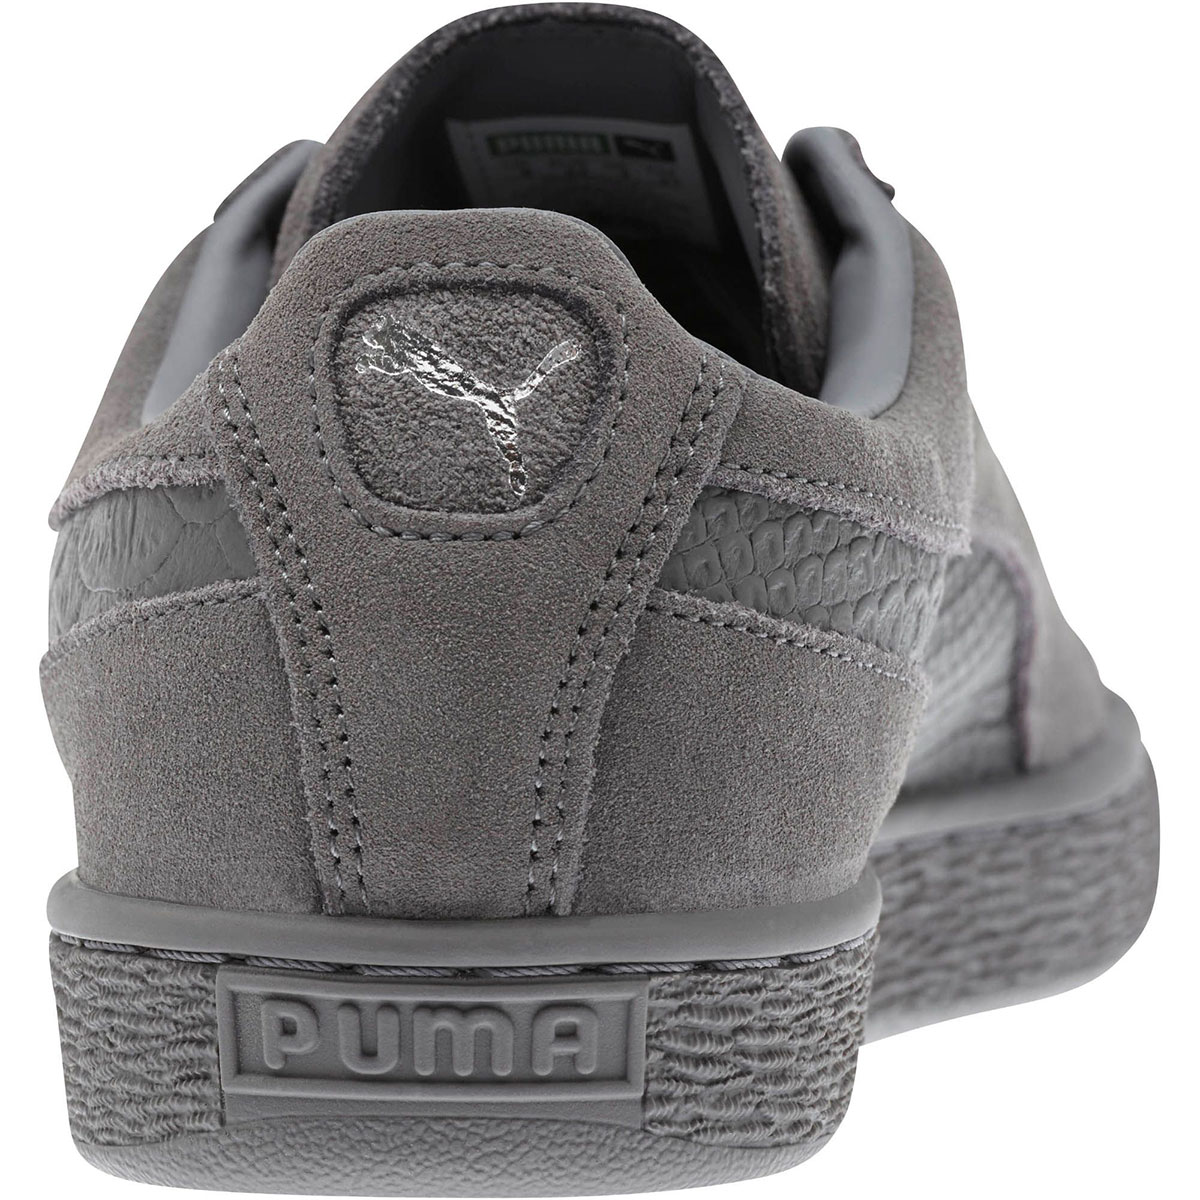 Puma Suede Mono Reptile grey  363164-03